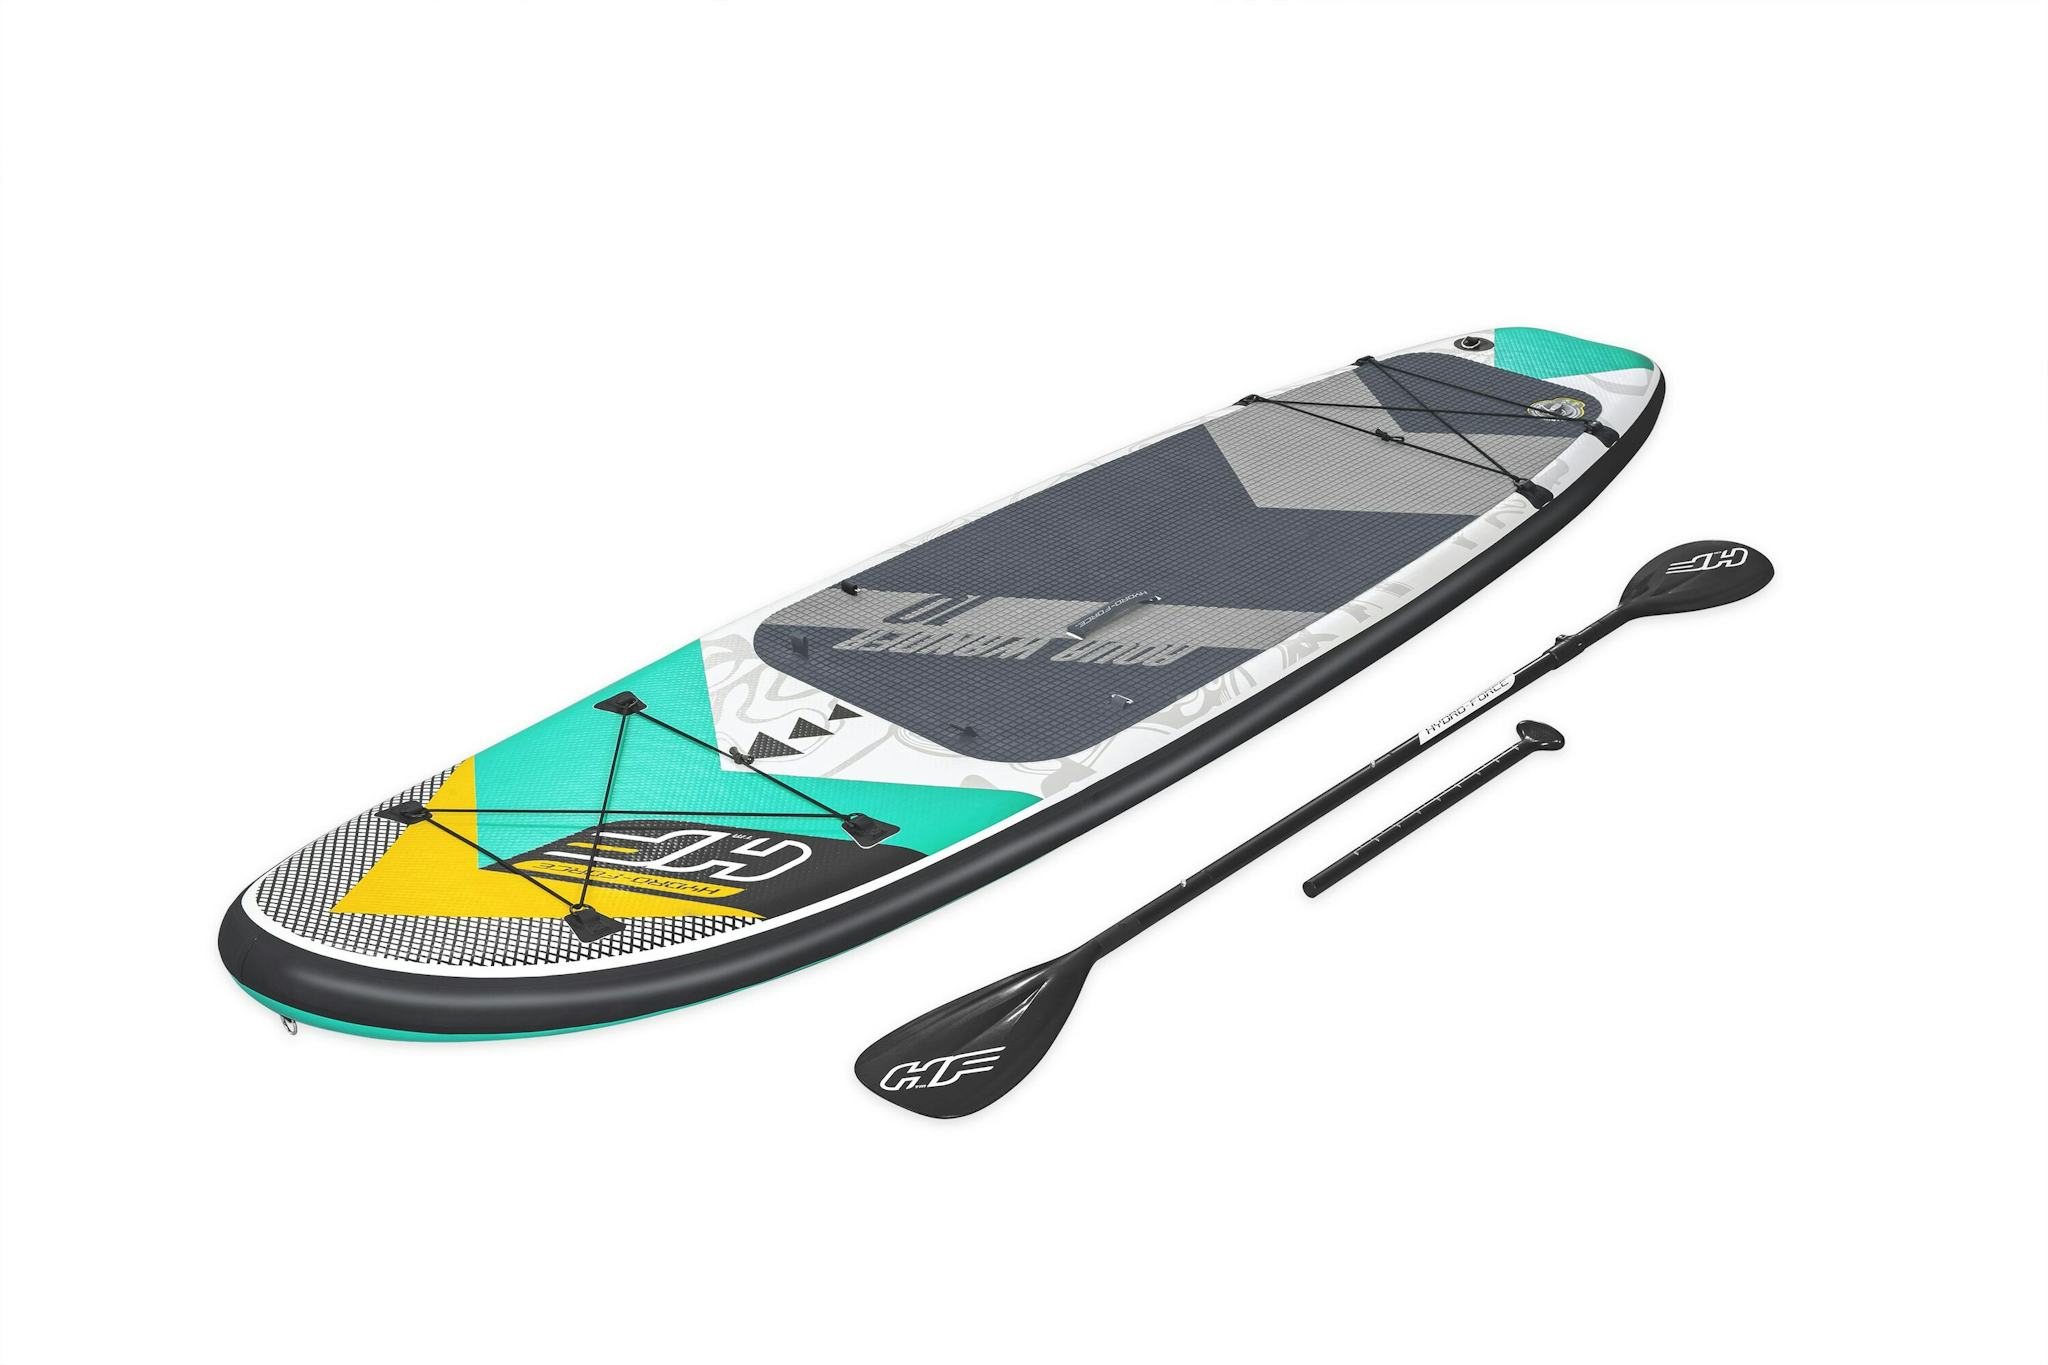 Sports d'eau Paddle SUP gonflable Hydro-Force™ Aqua Wander, 305 x 84 x 12 cm avec pagaie, leash, pompe, 2 ailerons et sac à dos de transport, siège détachable Bestway 3